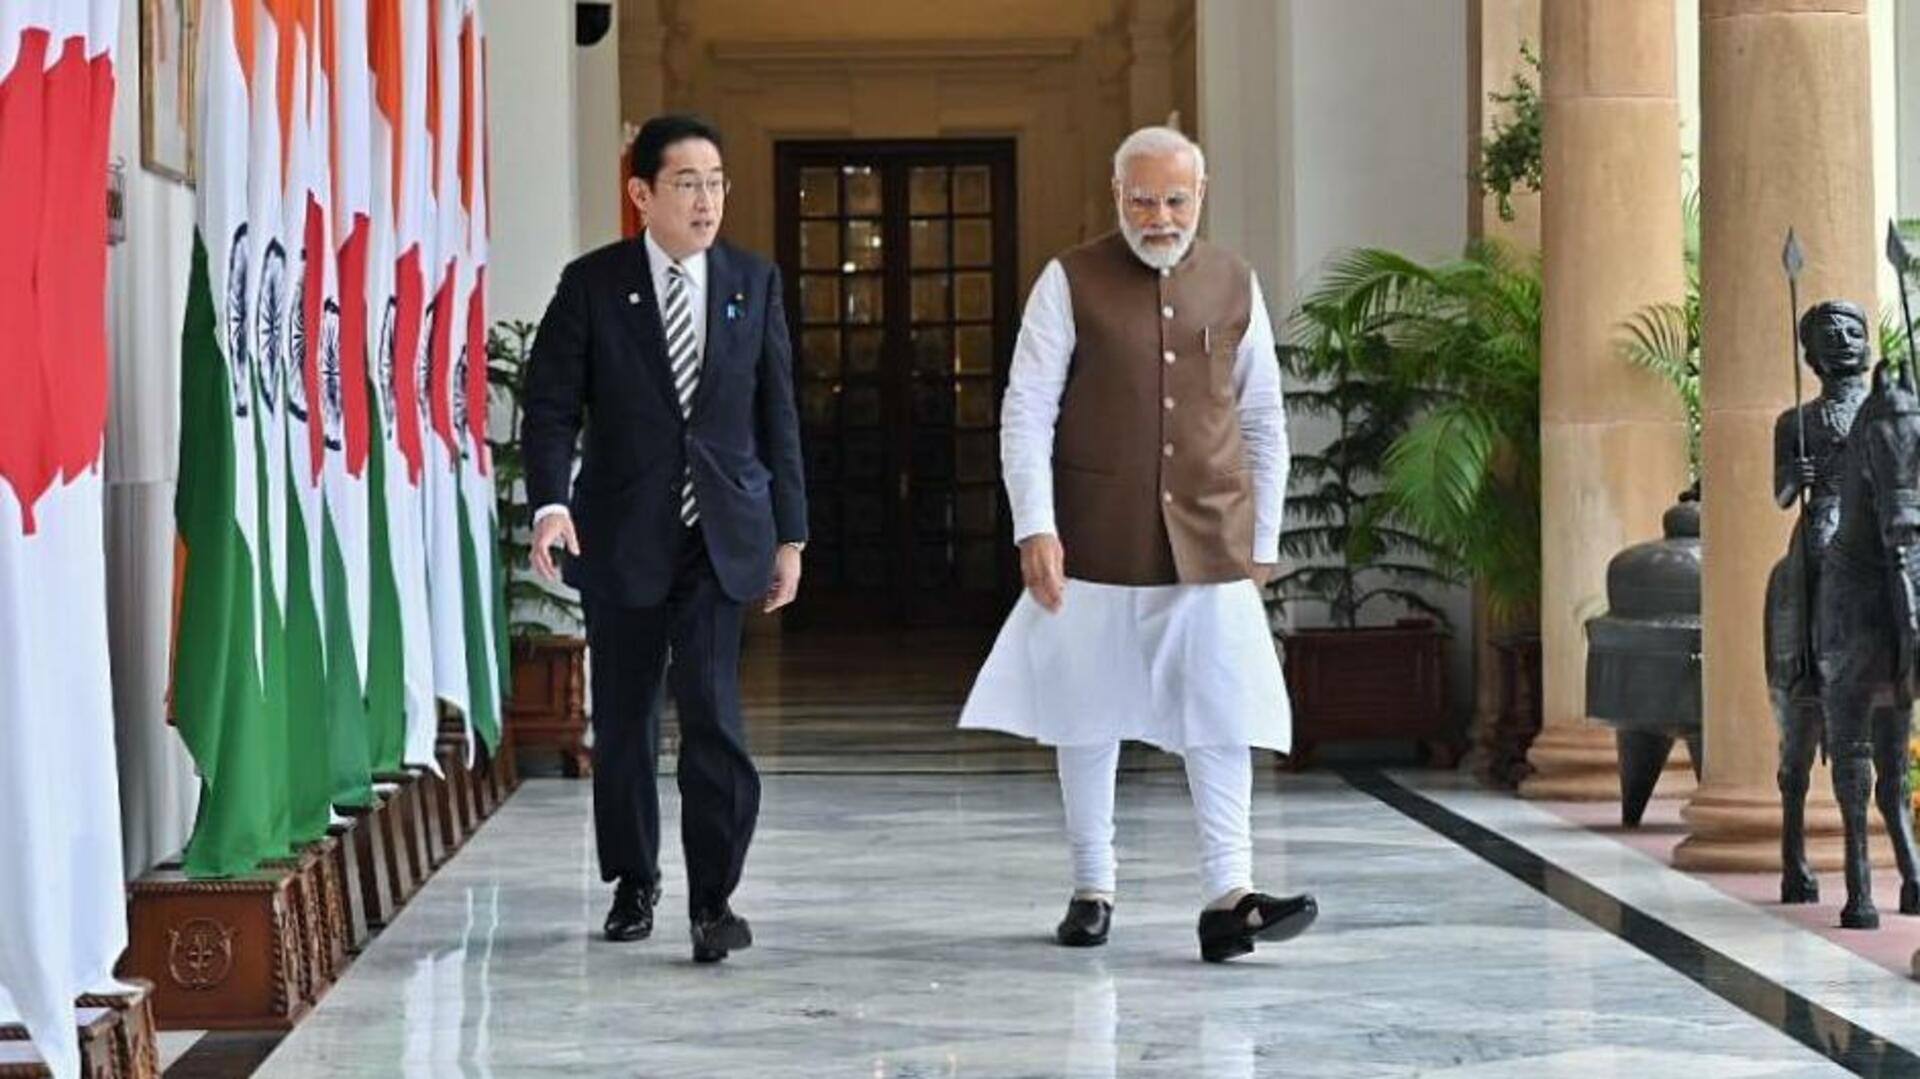 प्रधानमंत्री नरेंद्र मोदी ने जापानी प्रधानमंत्री किशिदा के साथ उठाया गोलगप्पों और लस्सी का लुत्फ